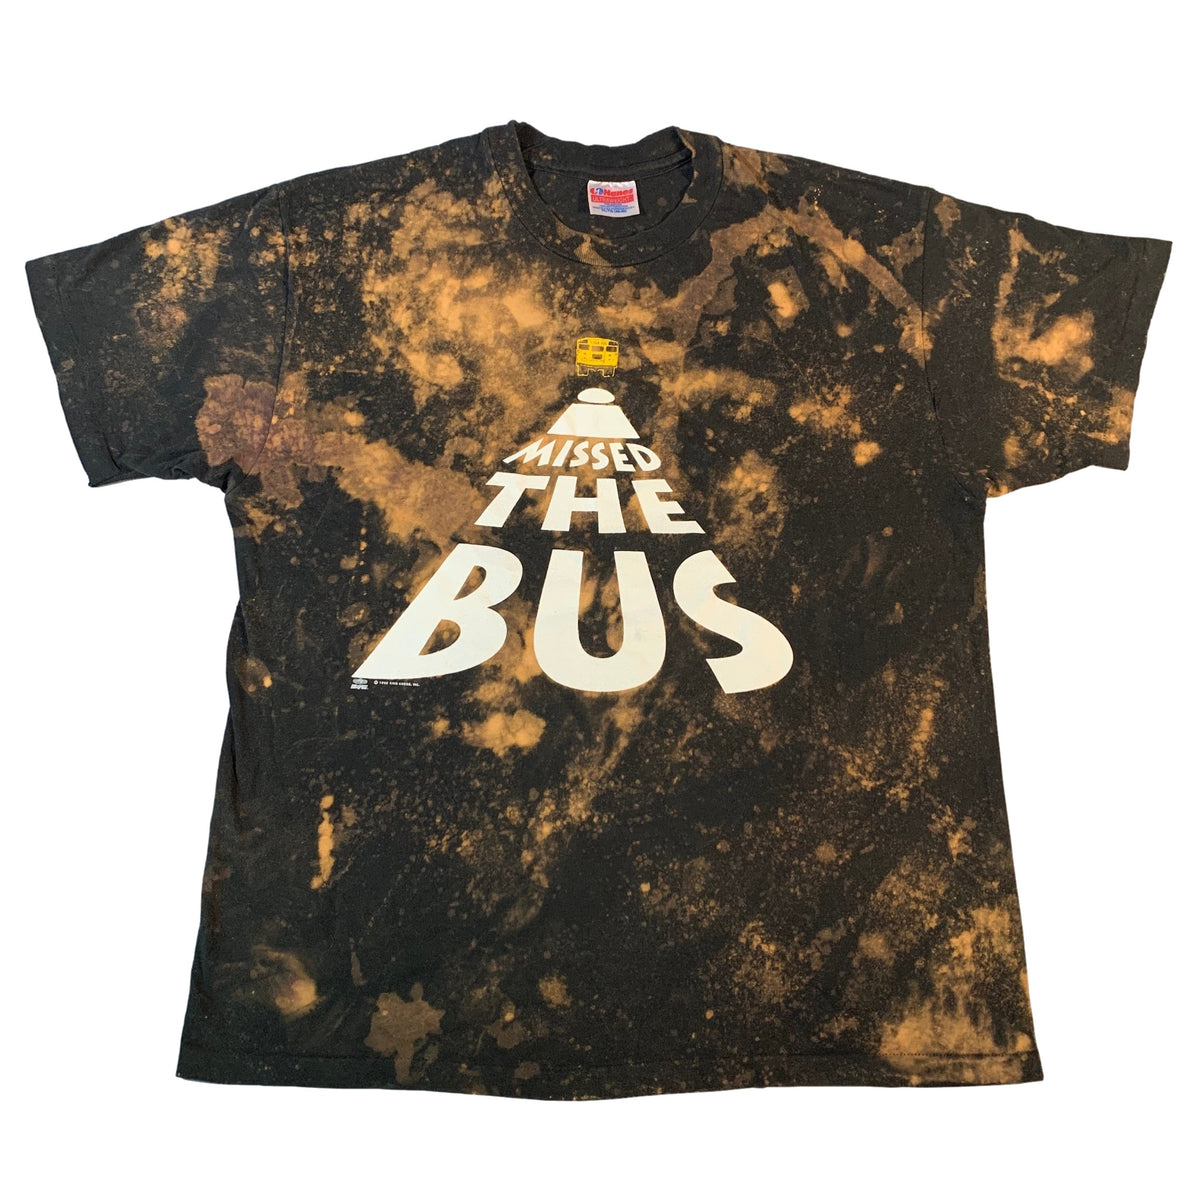 Vintage Kriss Kross &quot;Missed The Bus&quot; T-Shirt - jointcustodydc